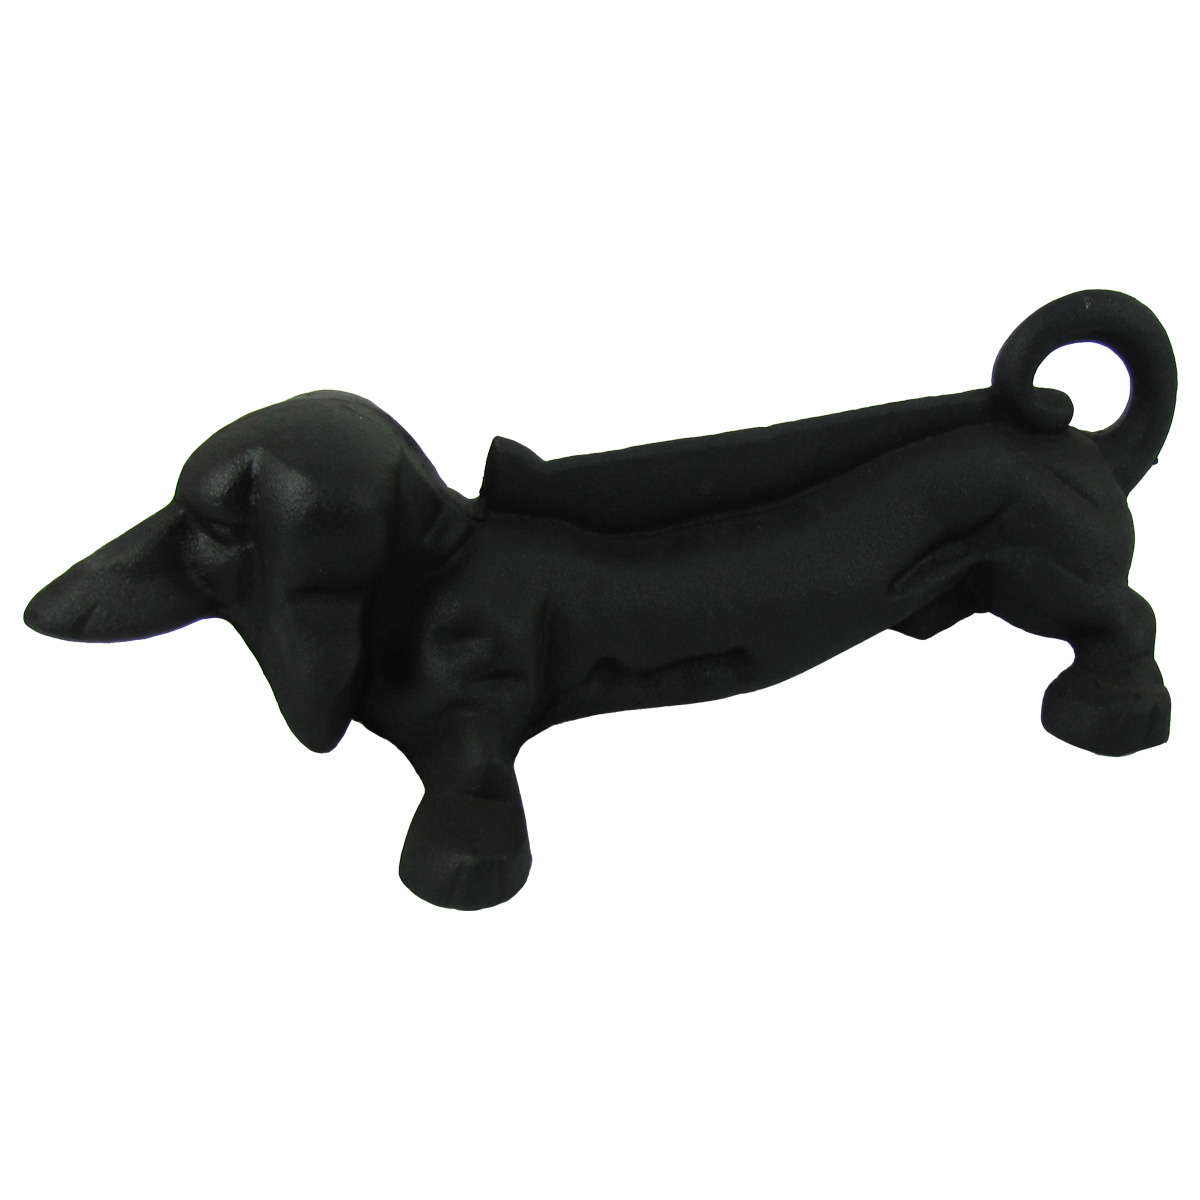 Antique Cast Iron Black Metal Dachshund Weiner Dog Boot/Shoe Scraper Wiener Dogs - image 1 of 2